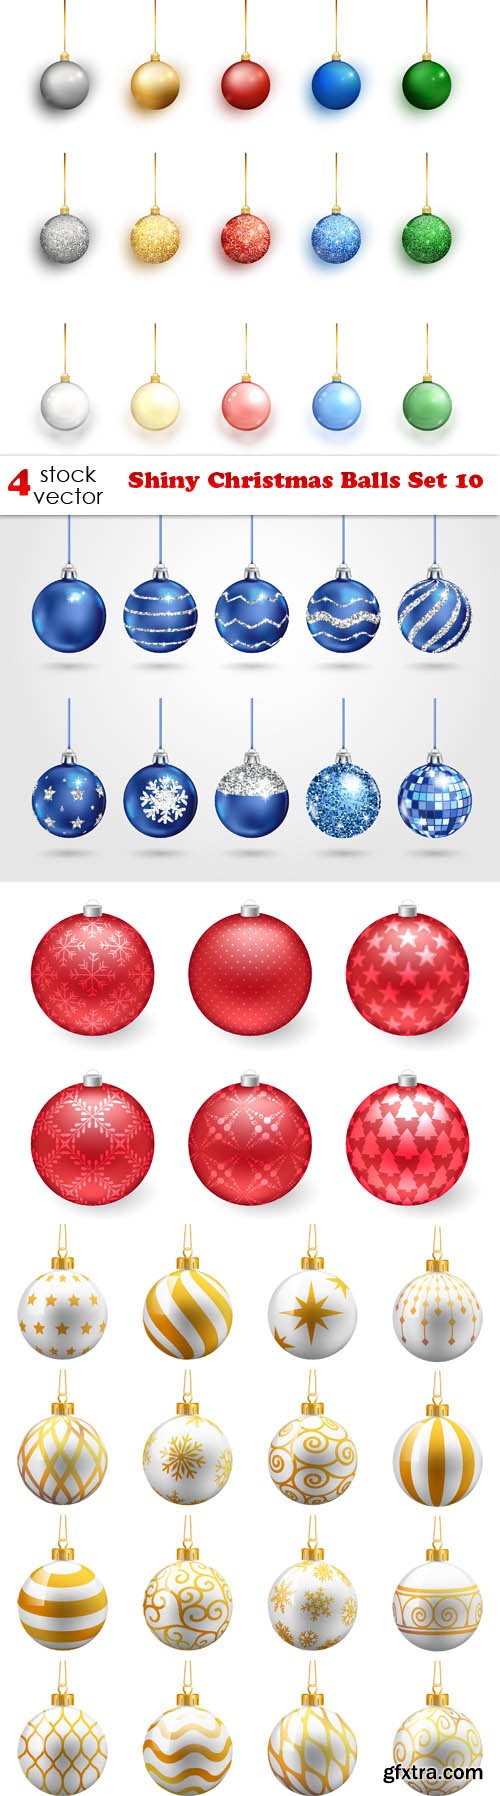 Vectors - Shiny Christmas Balls Set 10